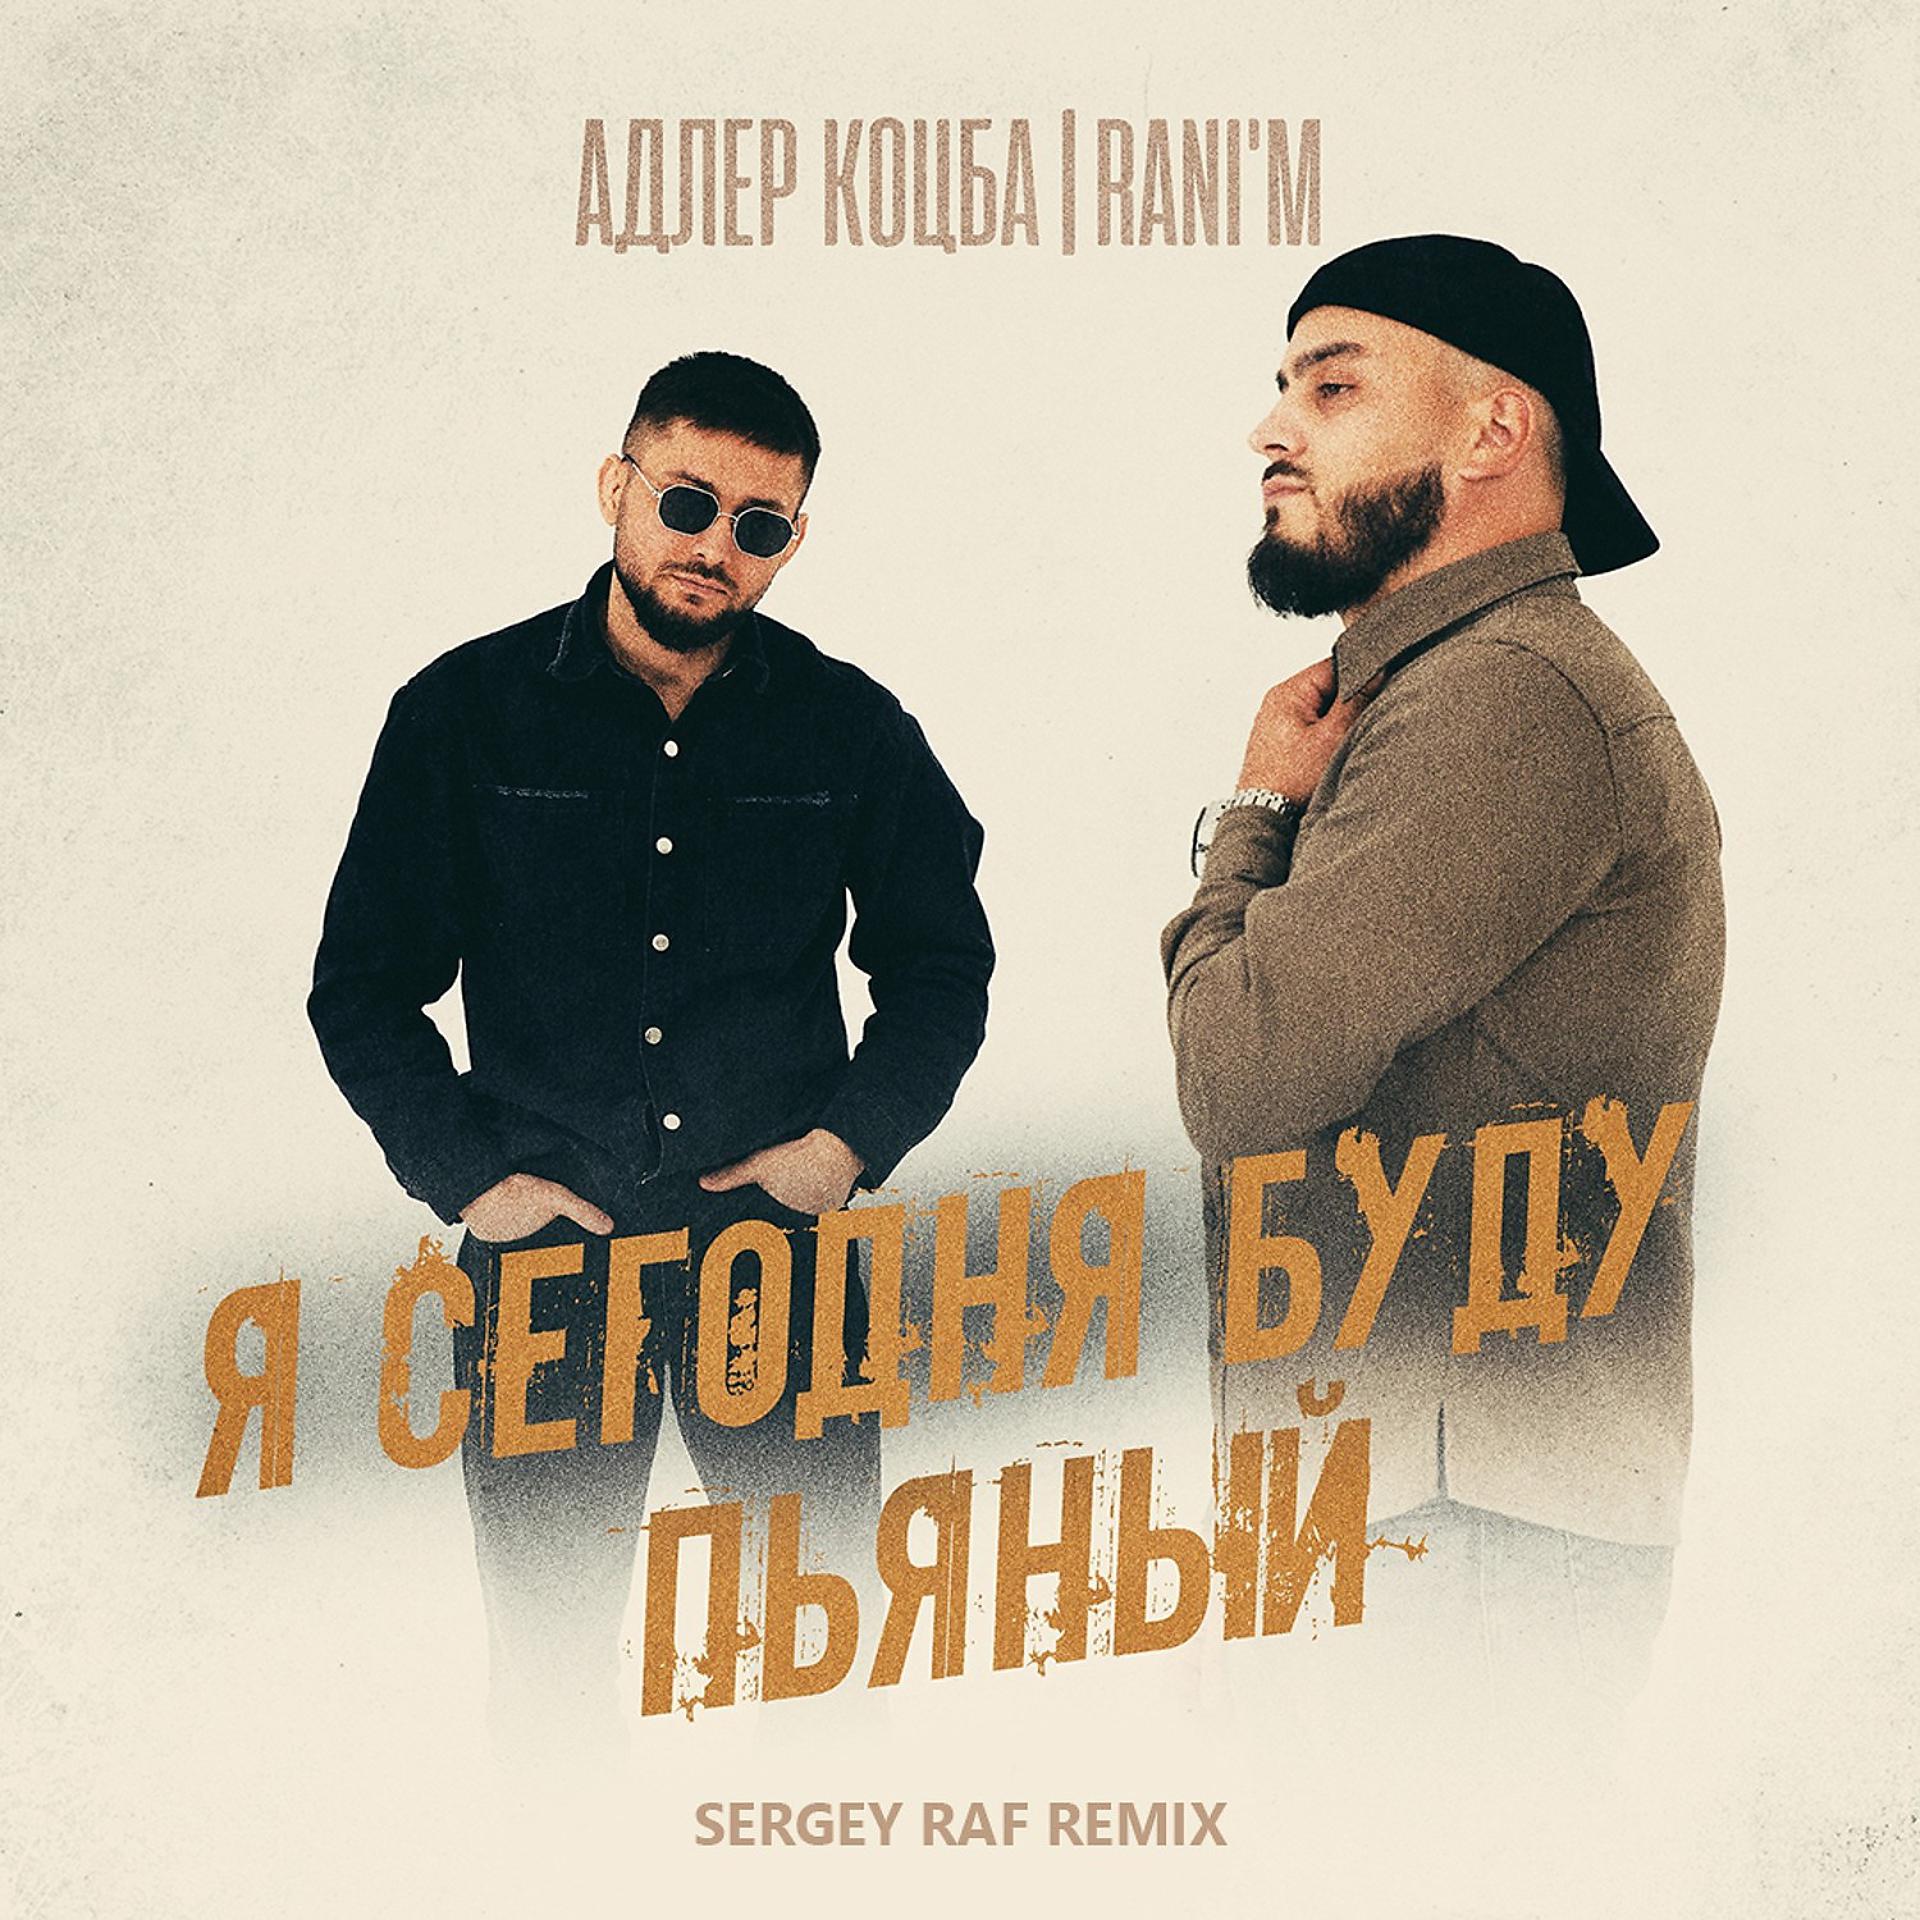 Постер к треку Адлер Коцба, RANI'M - Я сегодня буду пьяный (Sergey Raf Remix)